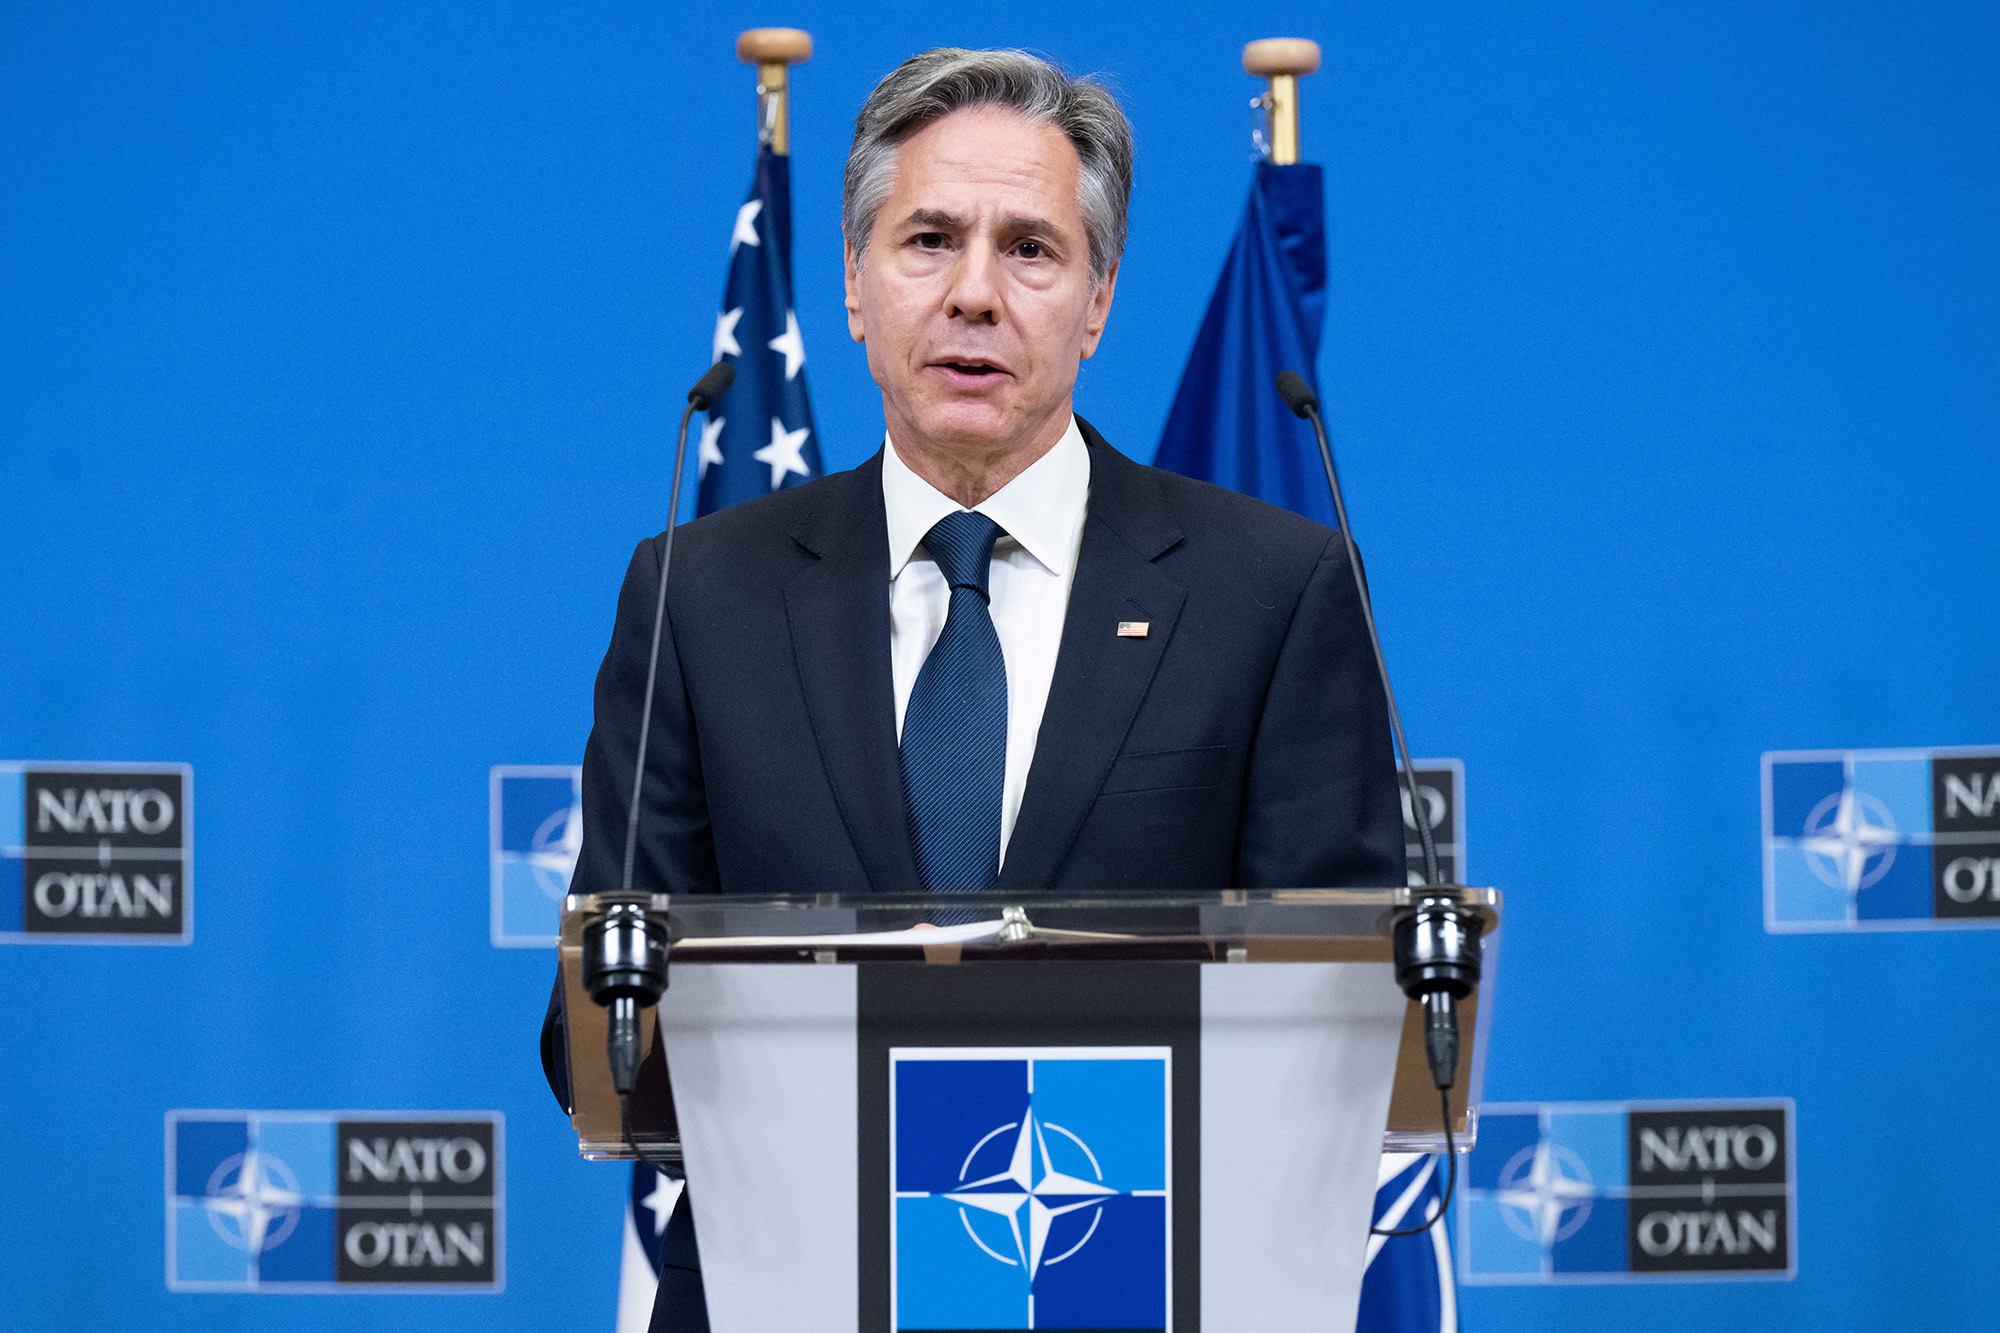 El secretario de Estado de Estados Unidos, Antony Blinken, ofrece una conferencia de prensa tras la reunión de Ministros de Asuntos Exteriores de la OTAN sobre Ucrania en la sede de la OTAN en Bruselas, Bélgica, el 29 de noviembre. (Saul Loeb/AFP/Getty Images)